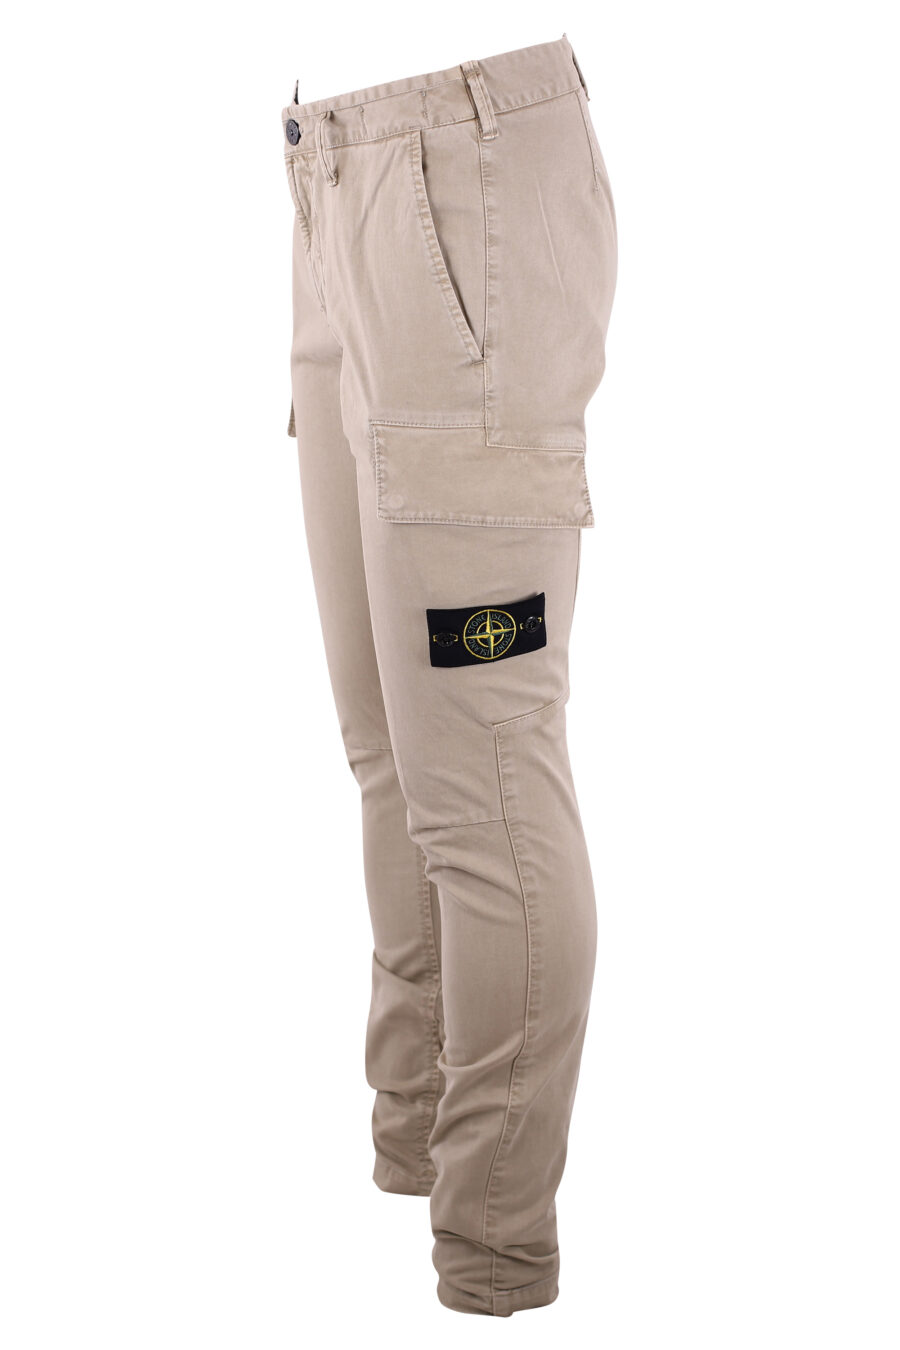 Pantalon beige avec poches latérales et écusson - IMG 3240